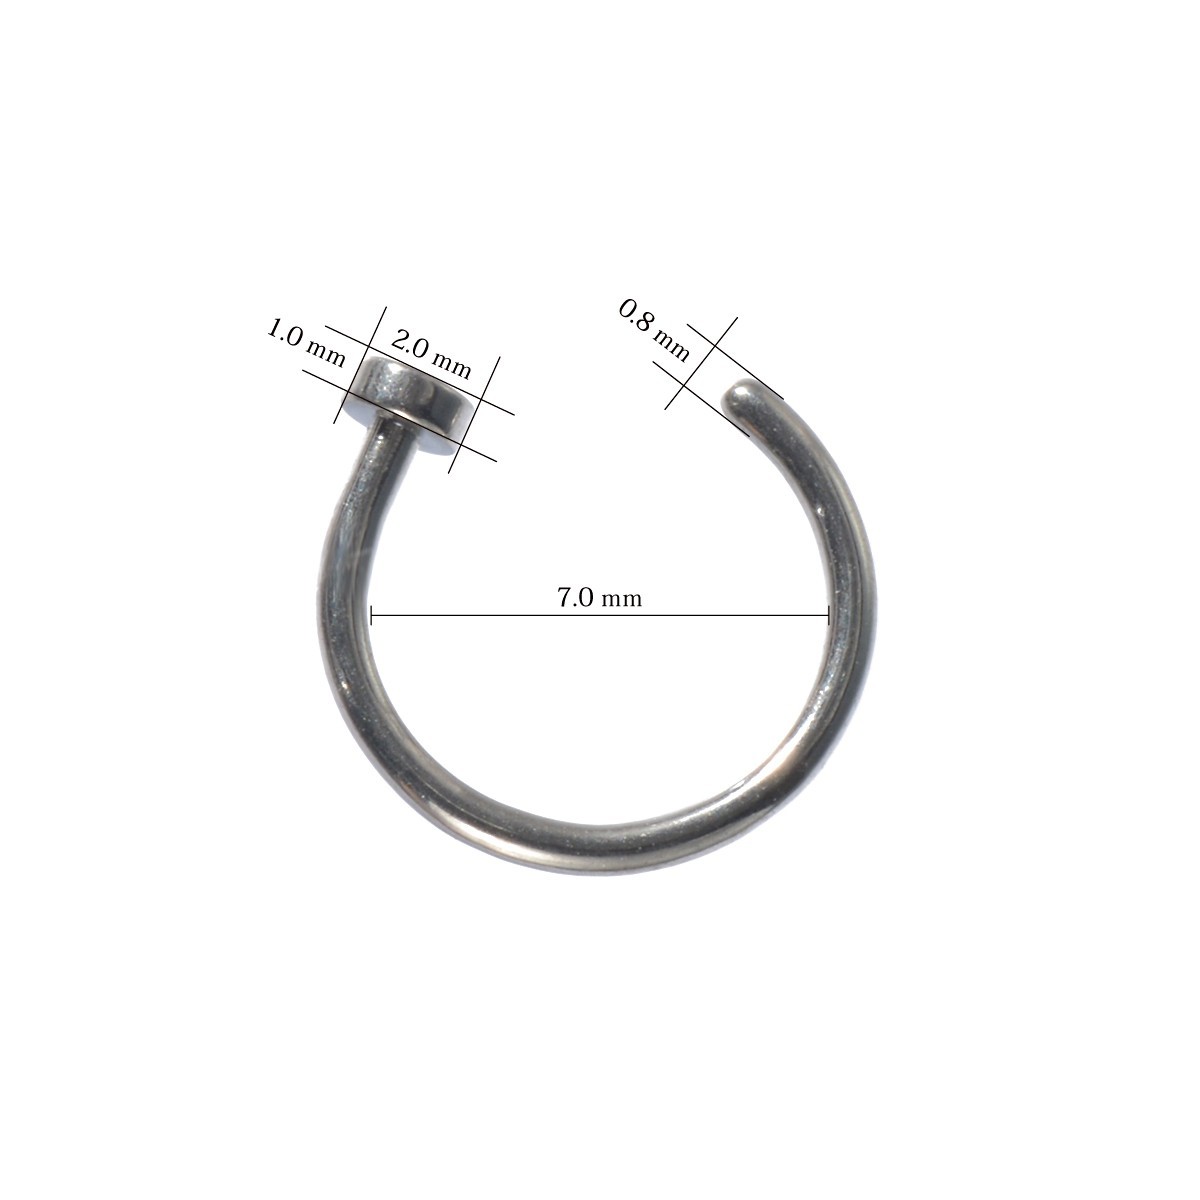 [ продажа по отдельности /1 шт ] пирсинги titanium нос серьги no -тактный liru кольцо standard body серьги 20 мера внутренний диаметр 7.0mm Flat 2.0mm серебряный цвет 